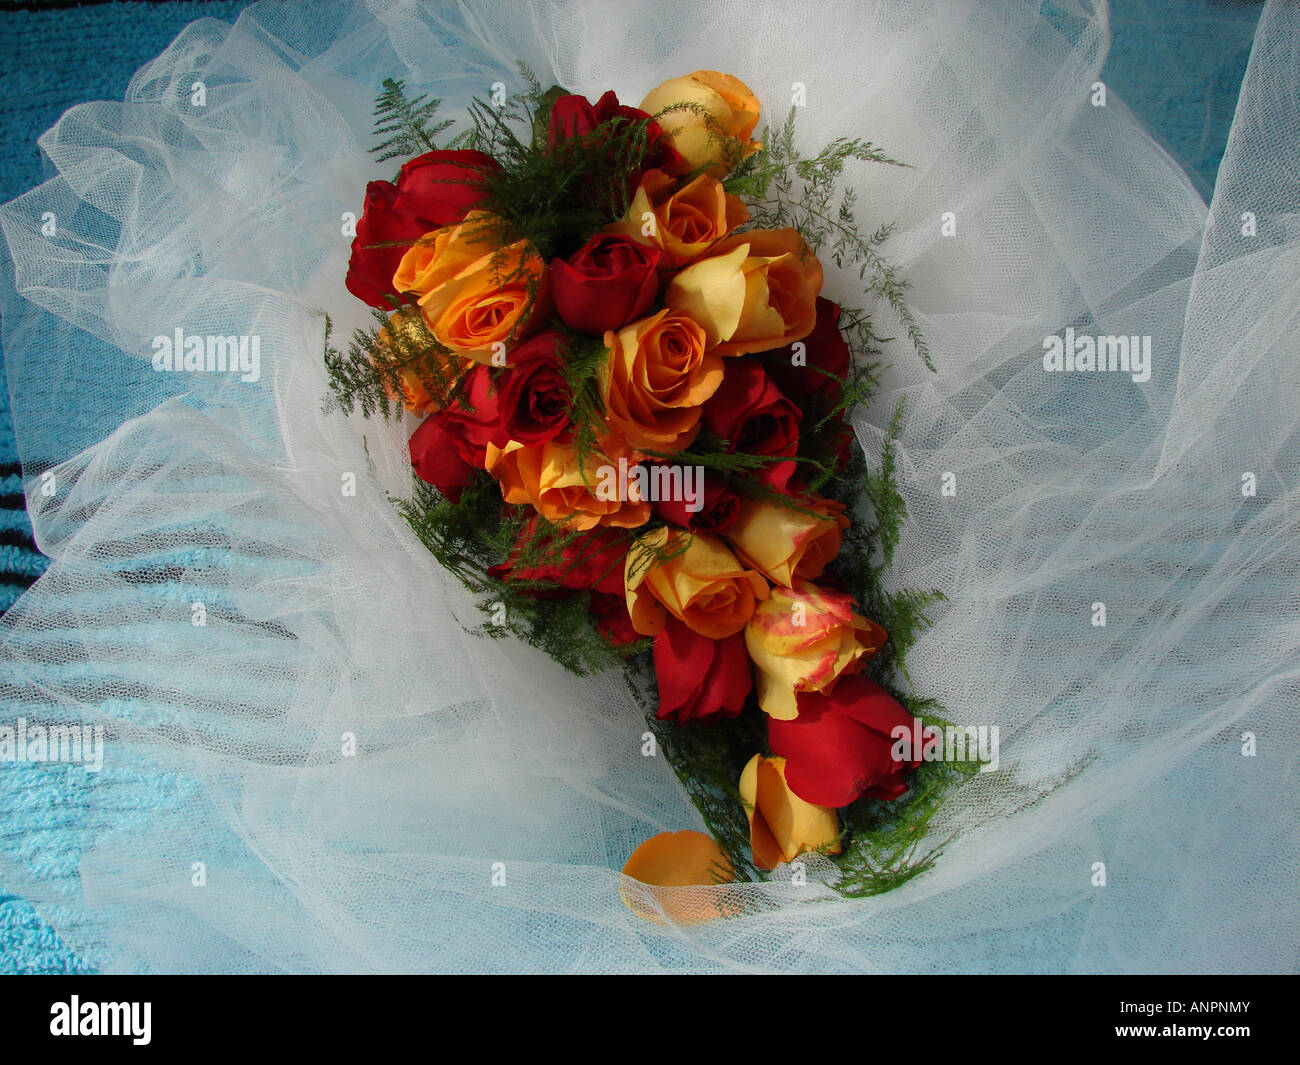 Ramo de novia de rosas rojas y amarillas Foto de stock